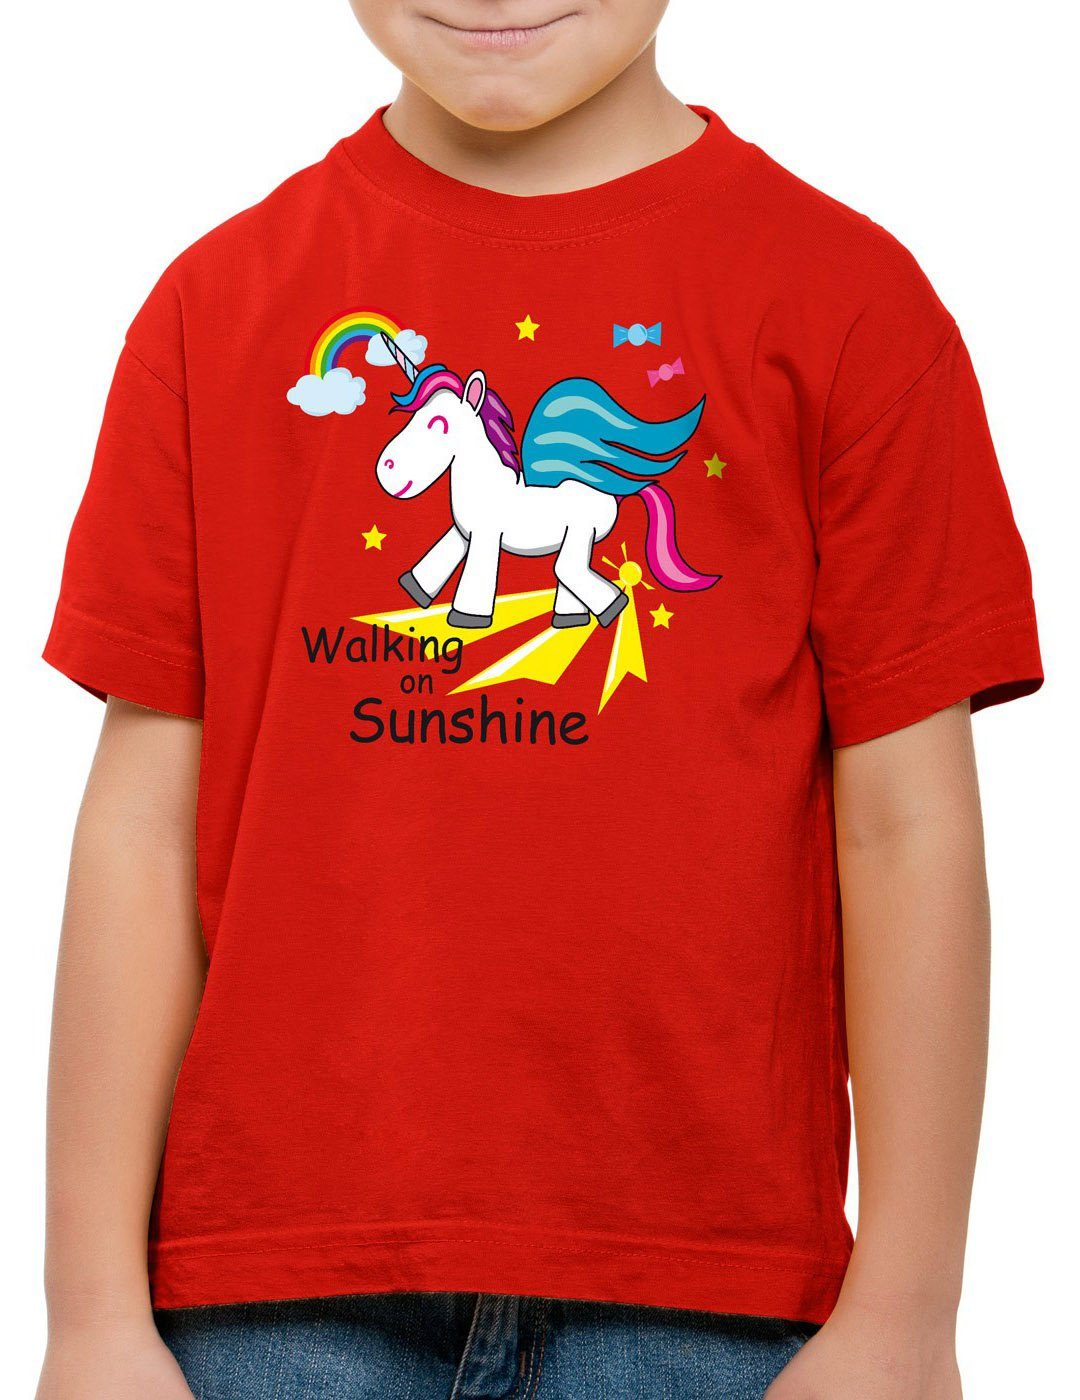 style3 Print-Shirt Kinder T-Shirt Unicorn Walking on Sunshine Einhorn Regenbogen Fun Spruch rot